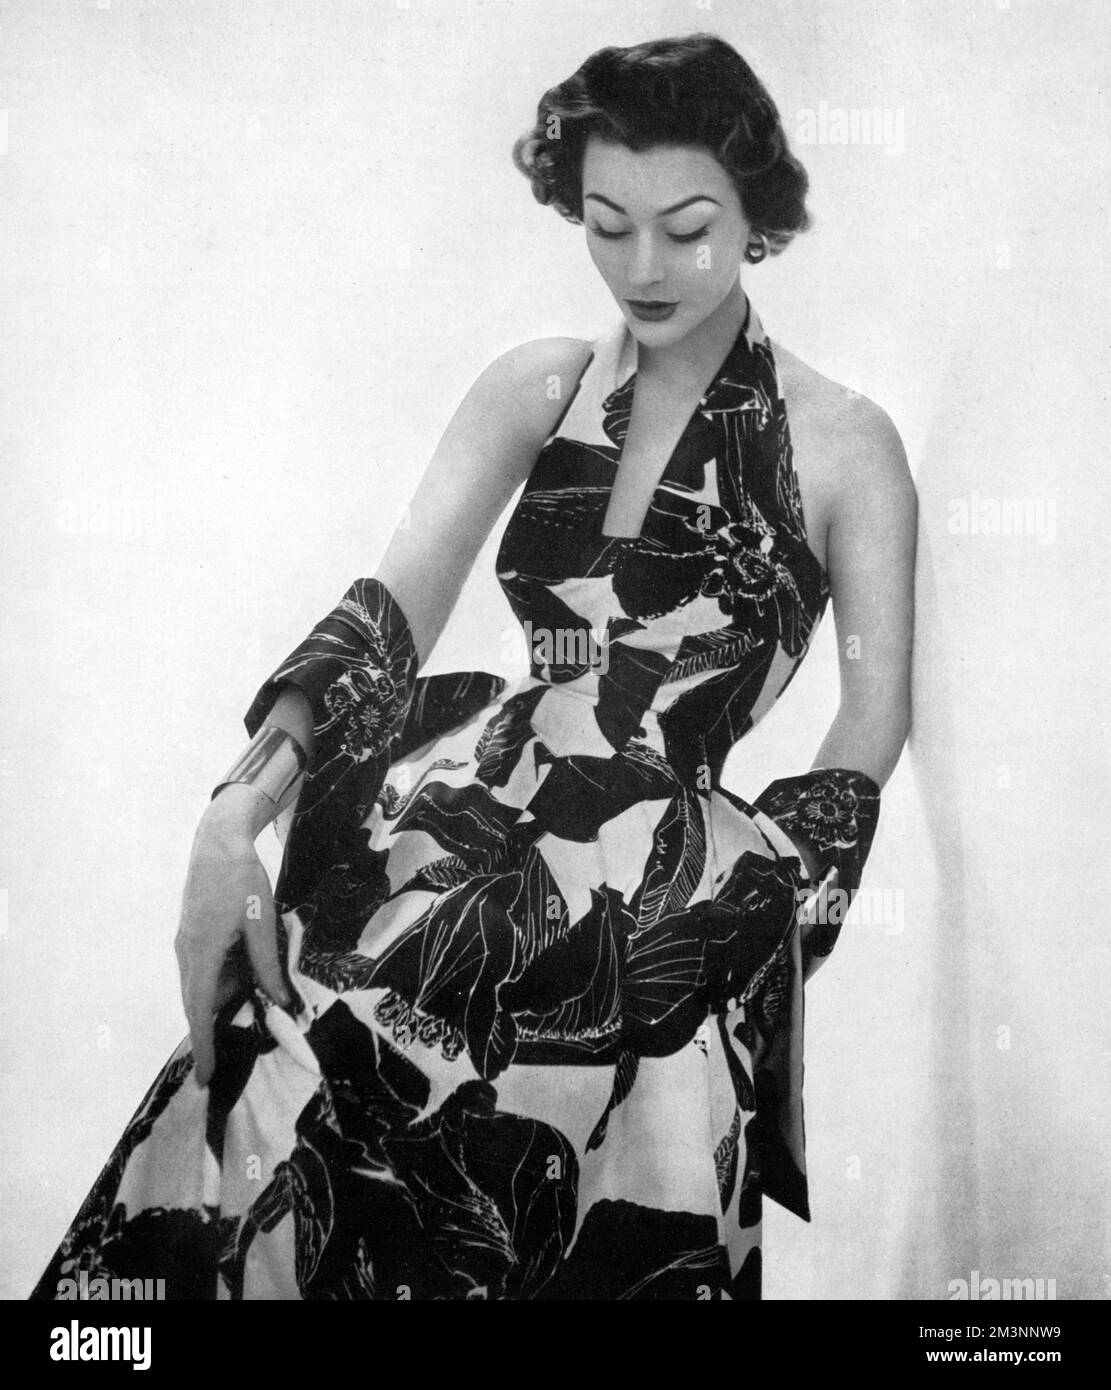 Ein Abendkleid mit Stehkragen und einem durchgehenden, wirbelnden Rock aus Baumwolle mit tropischem Blumenmuster. Datum: 1953 Stockfoto